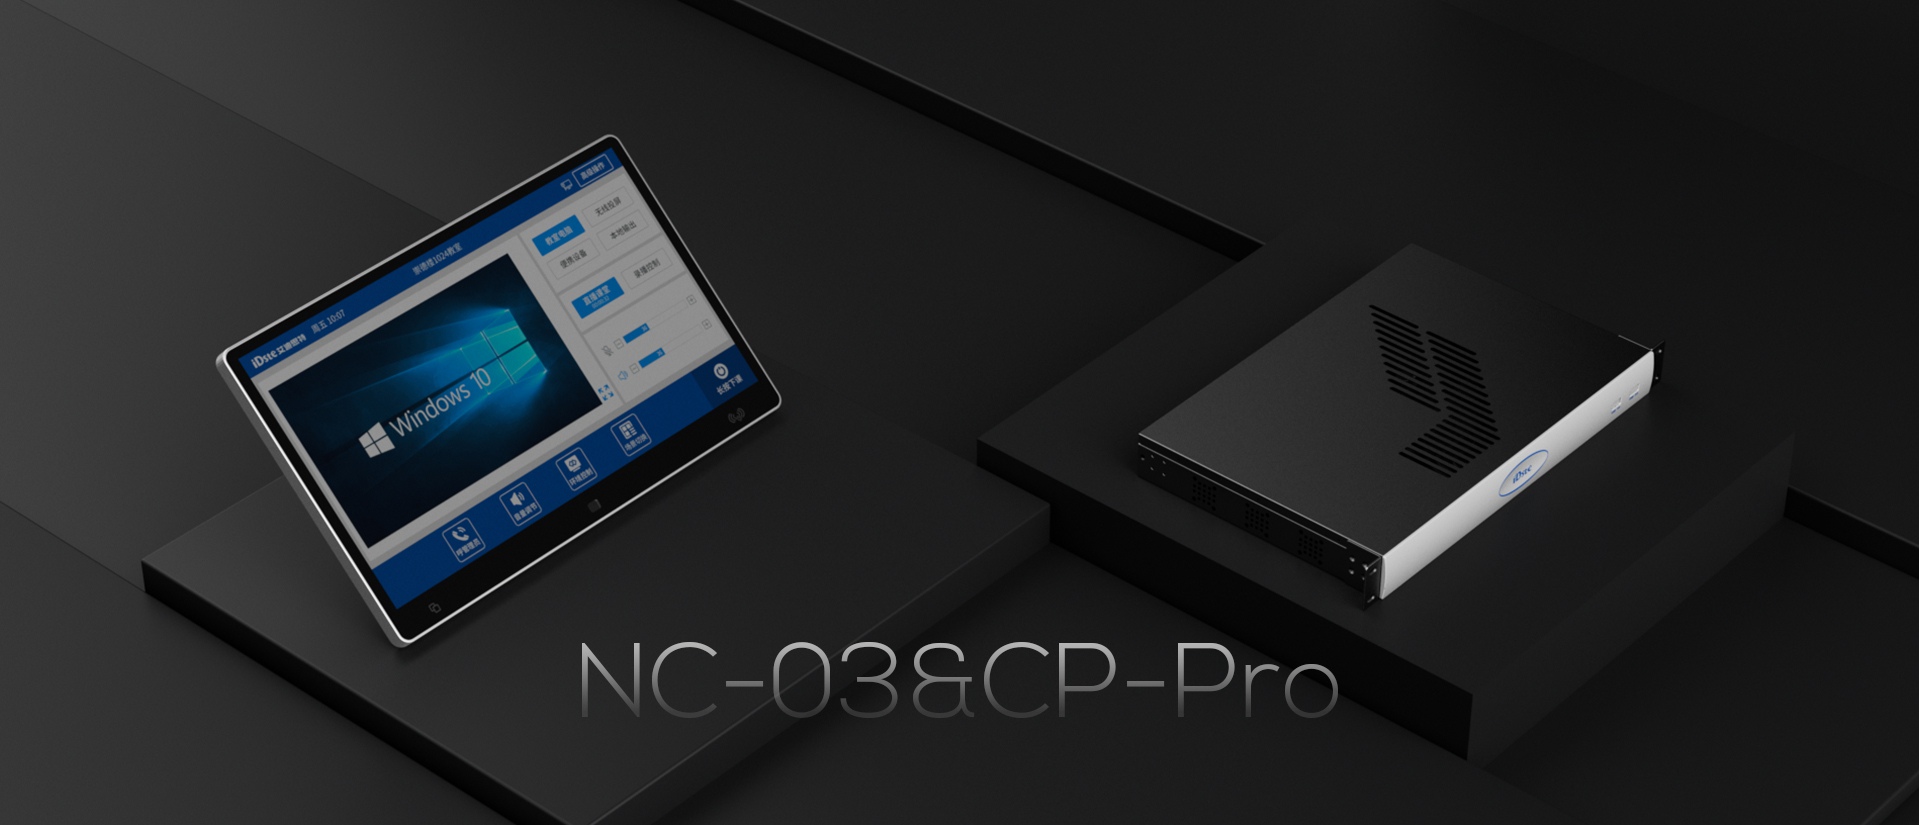 NC-03&CP-Pro